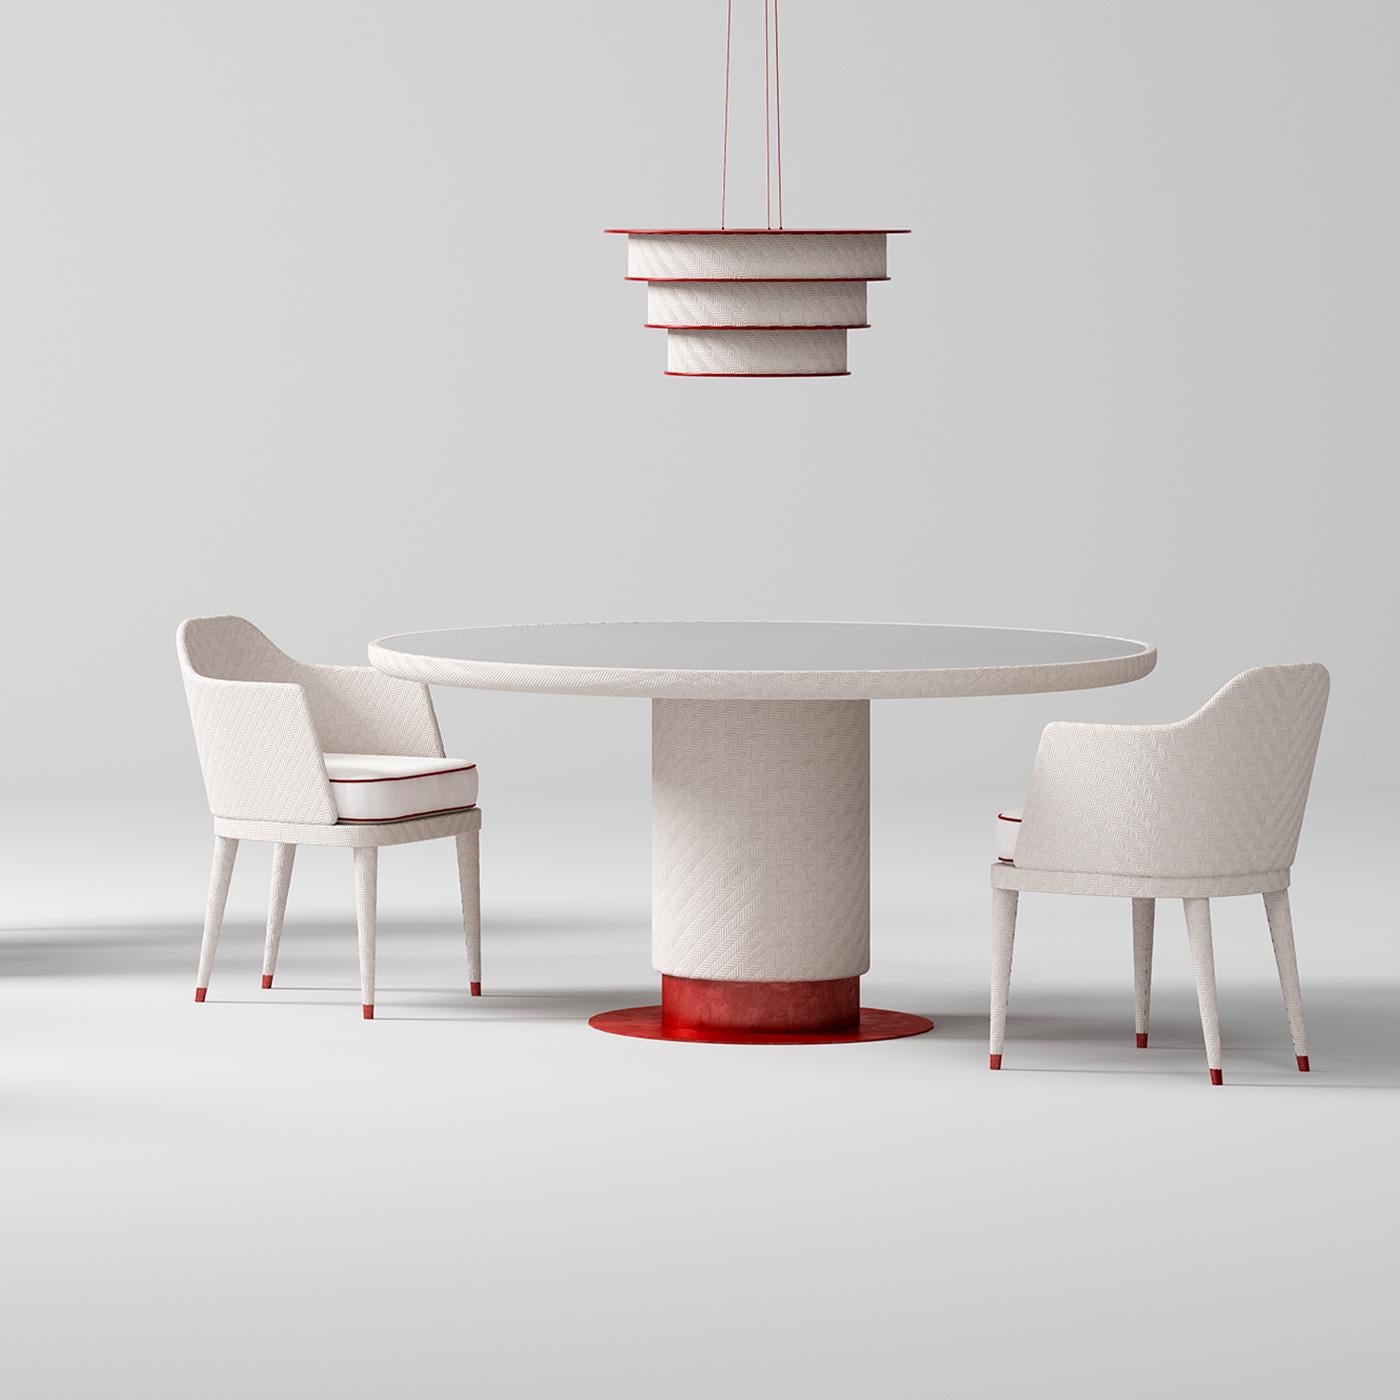 Die monolithische und skulpturale Linie dieses atemberaubenden Tisches lässt sich dank seiner eleganten und widerstandsfähigen Materialien leicht an Außenbereiche anpassen. Auf einer flachen Plattform aus poliertem und mit rotem Epoxidpulver